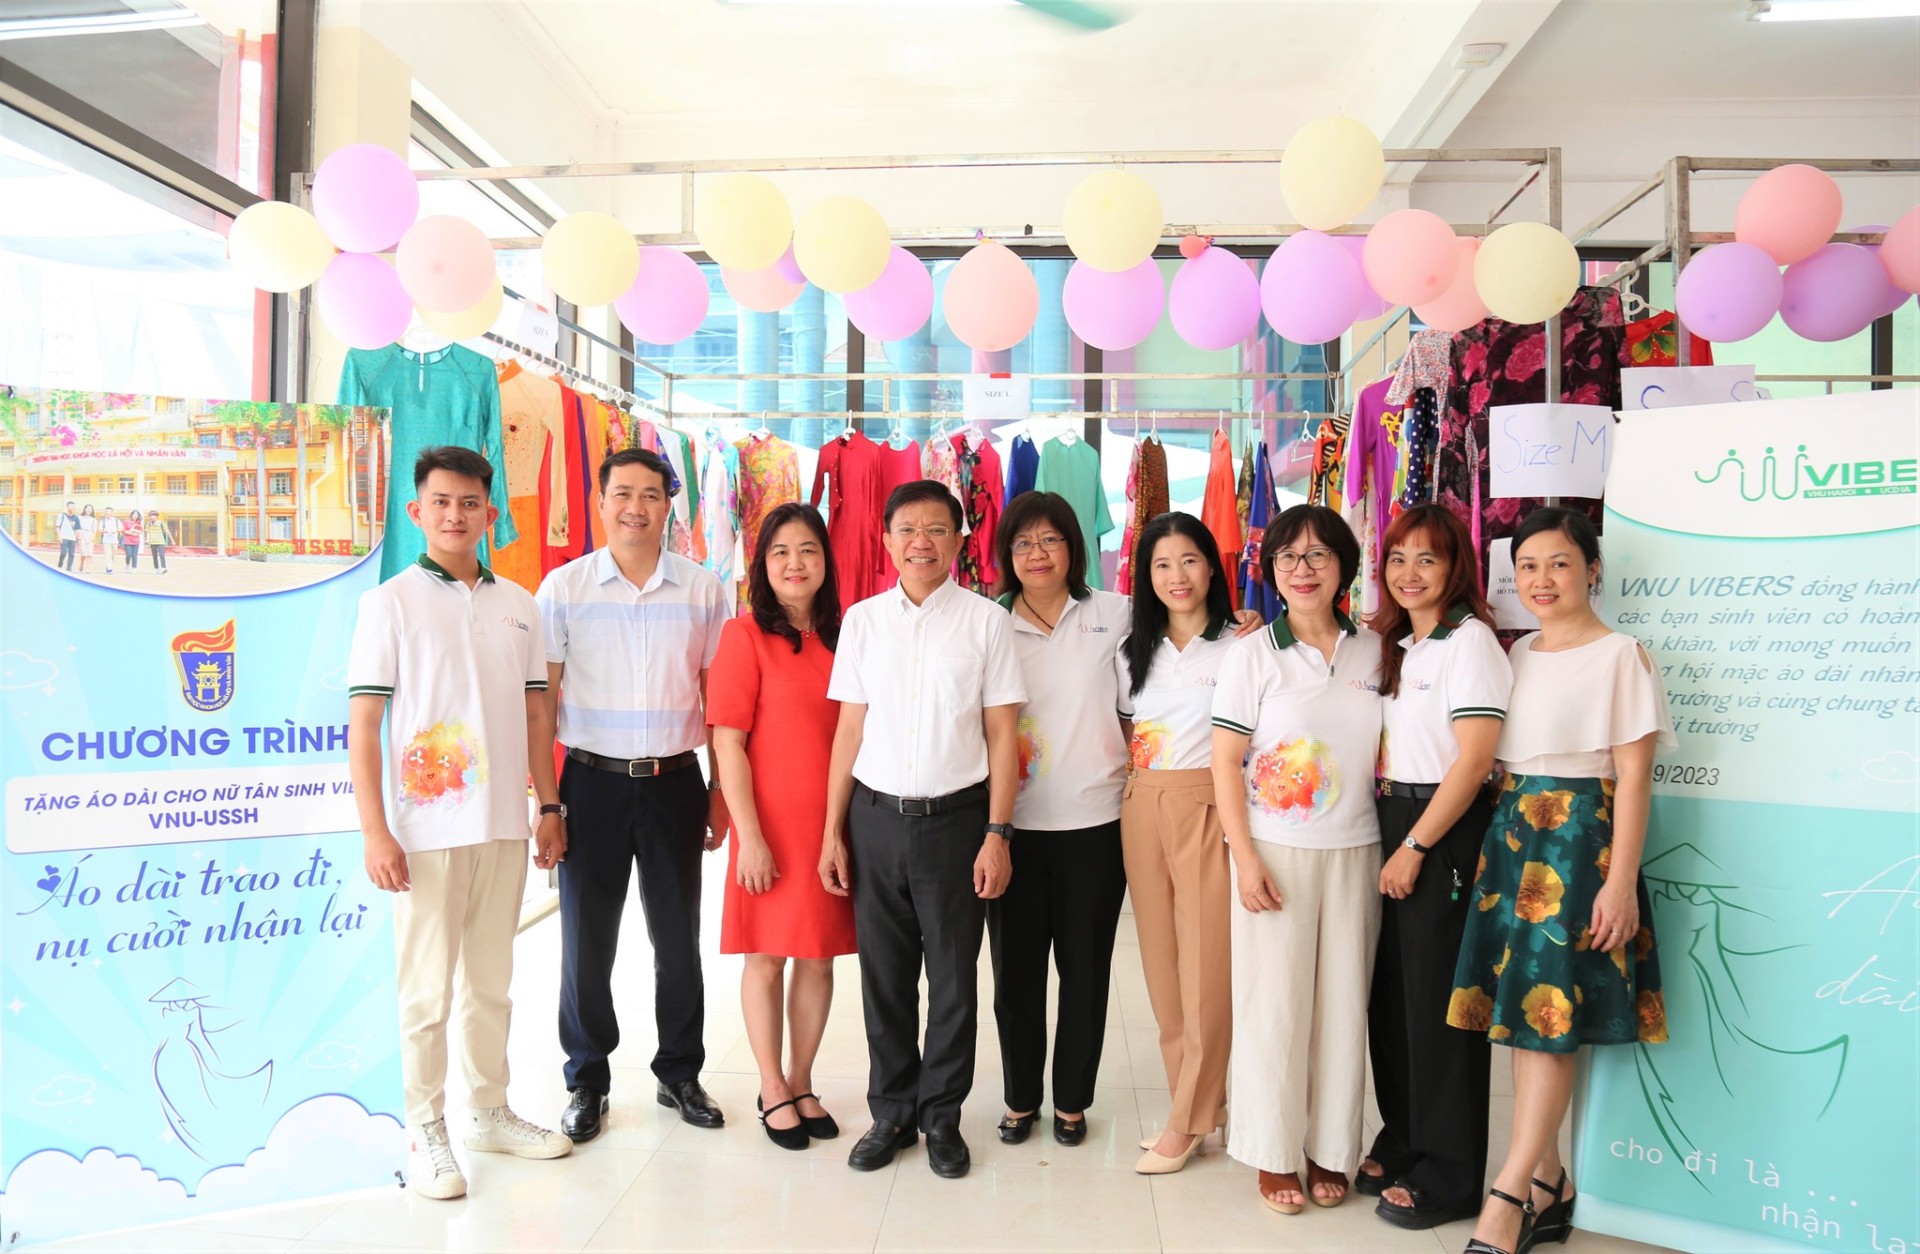 Chương trình ý nghĩa trong ngày nhập học của Tân sinh viên K68 của trường Đại học Khoa học Xã hội và Nhân văn, Đại học Quốc gia Hà Nội